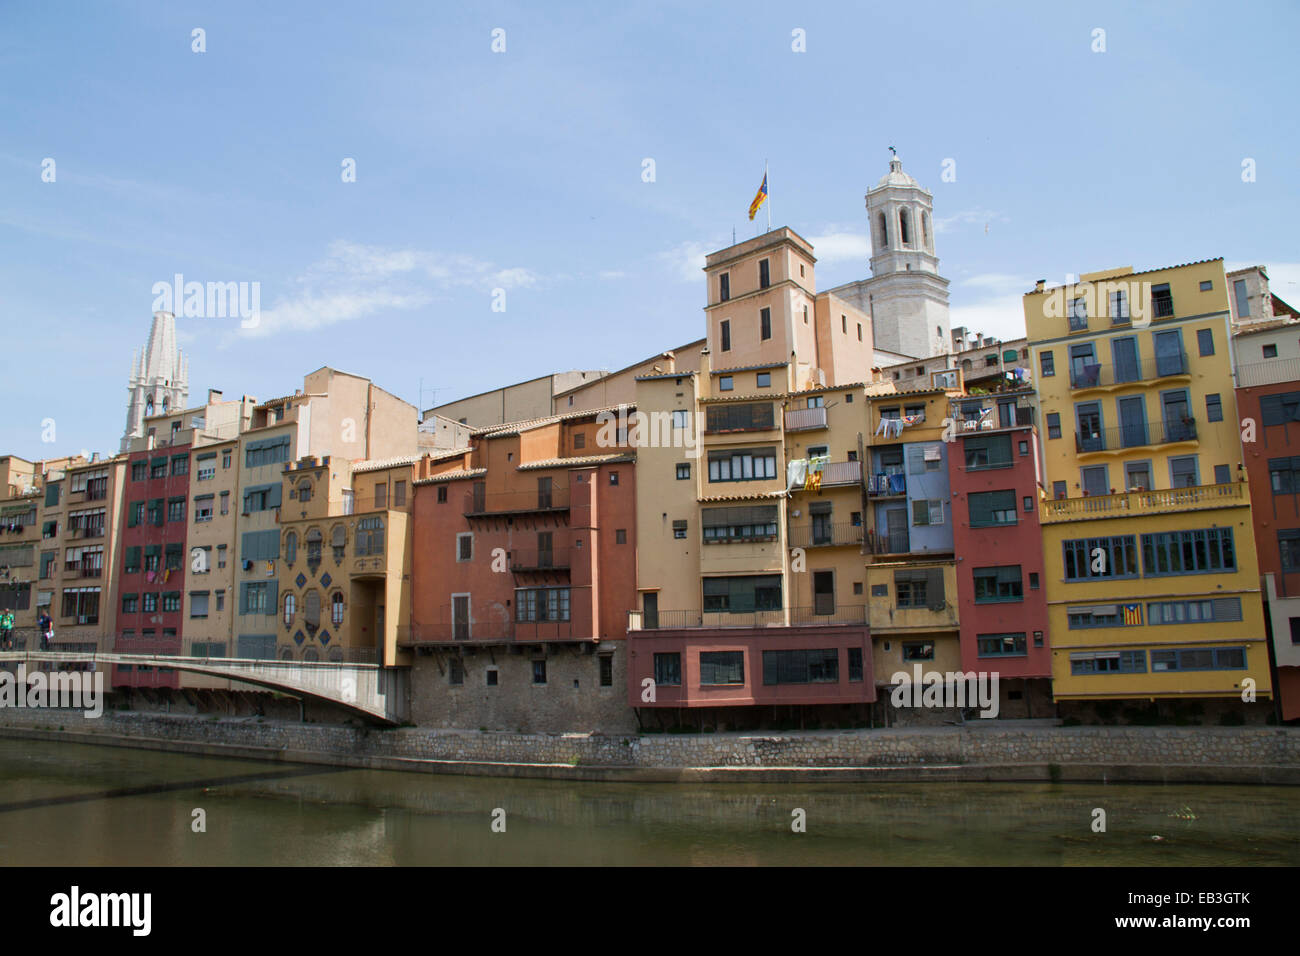 Altstadt-Gebäude säumen den Onyar-Fluss, der durch das Zentrum der Stadt mit dem Dom im Hintergrund Girona, Spanien Stockfoto